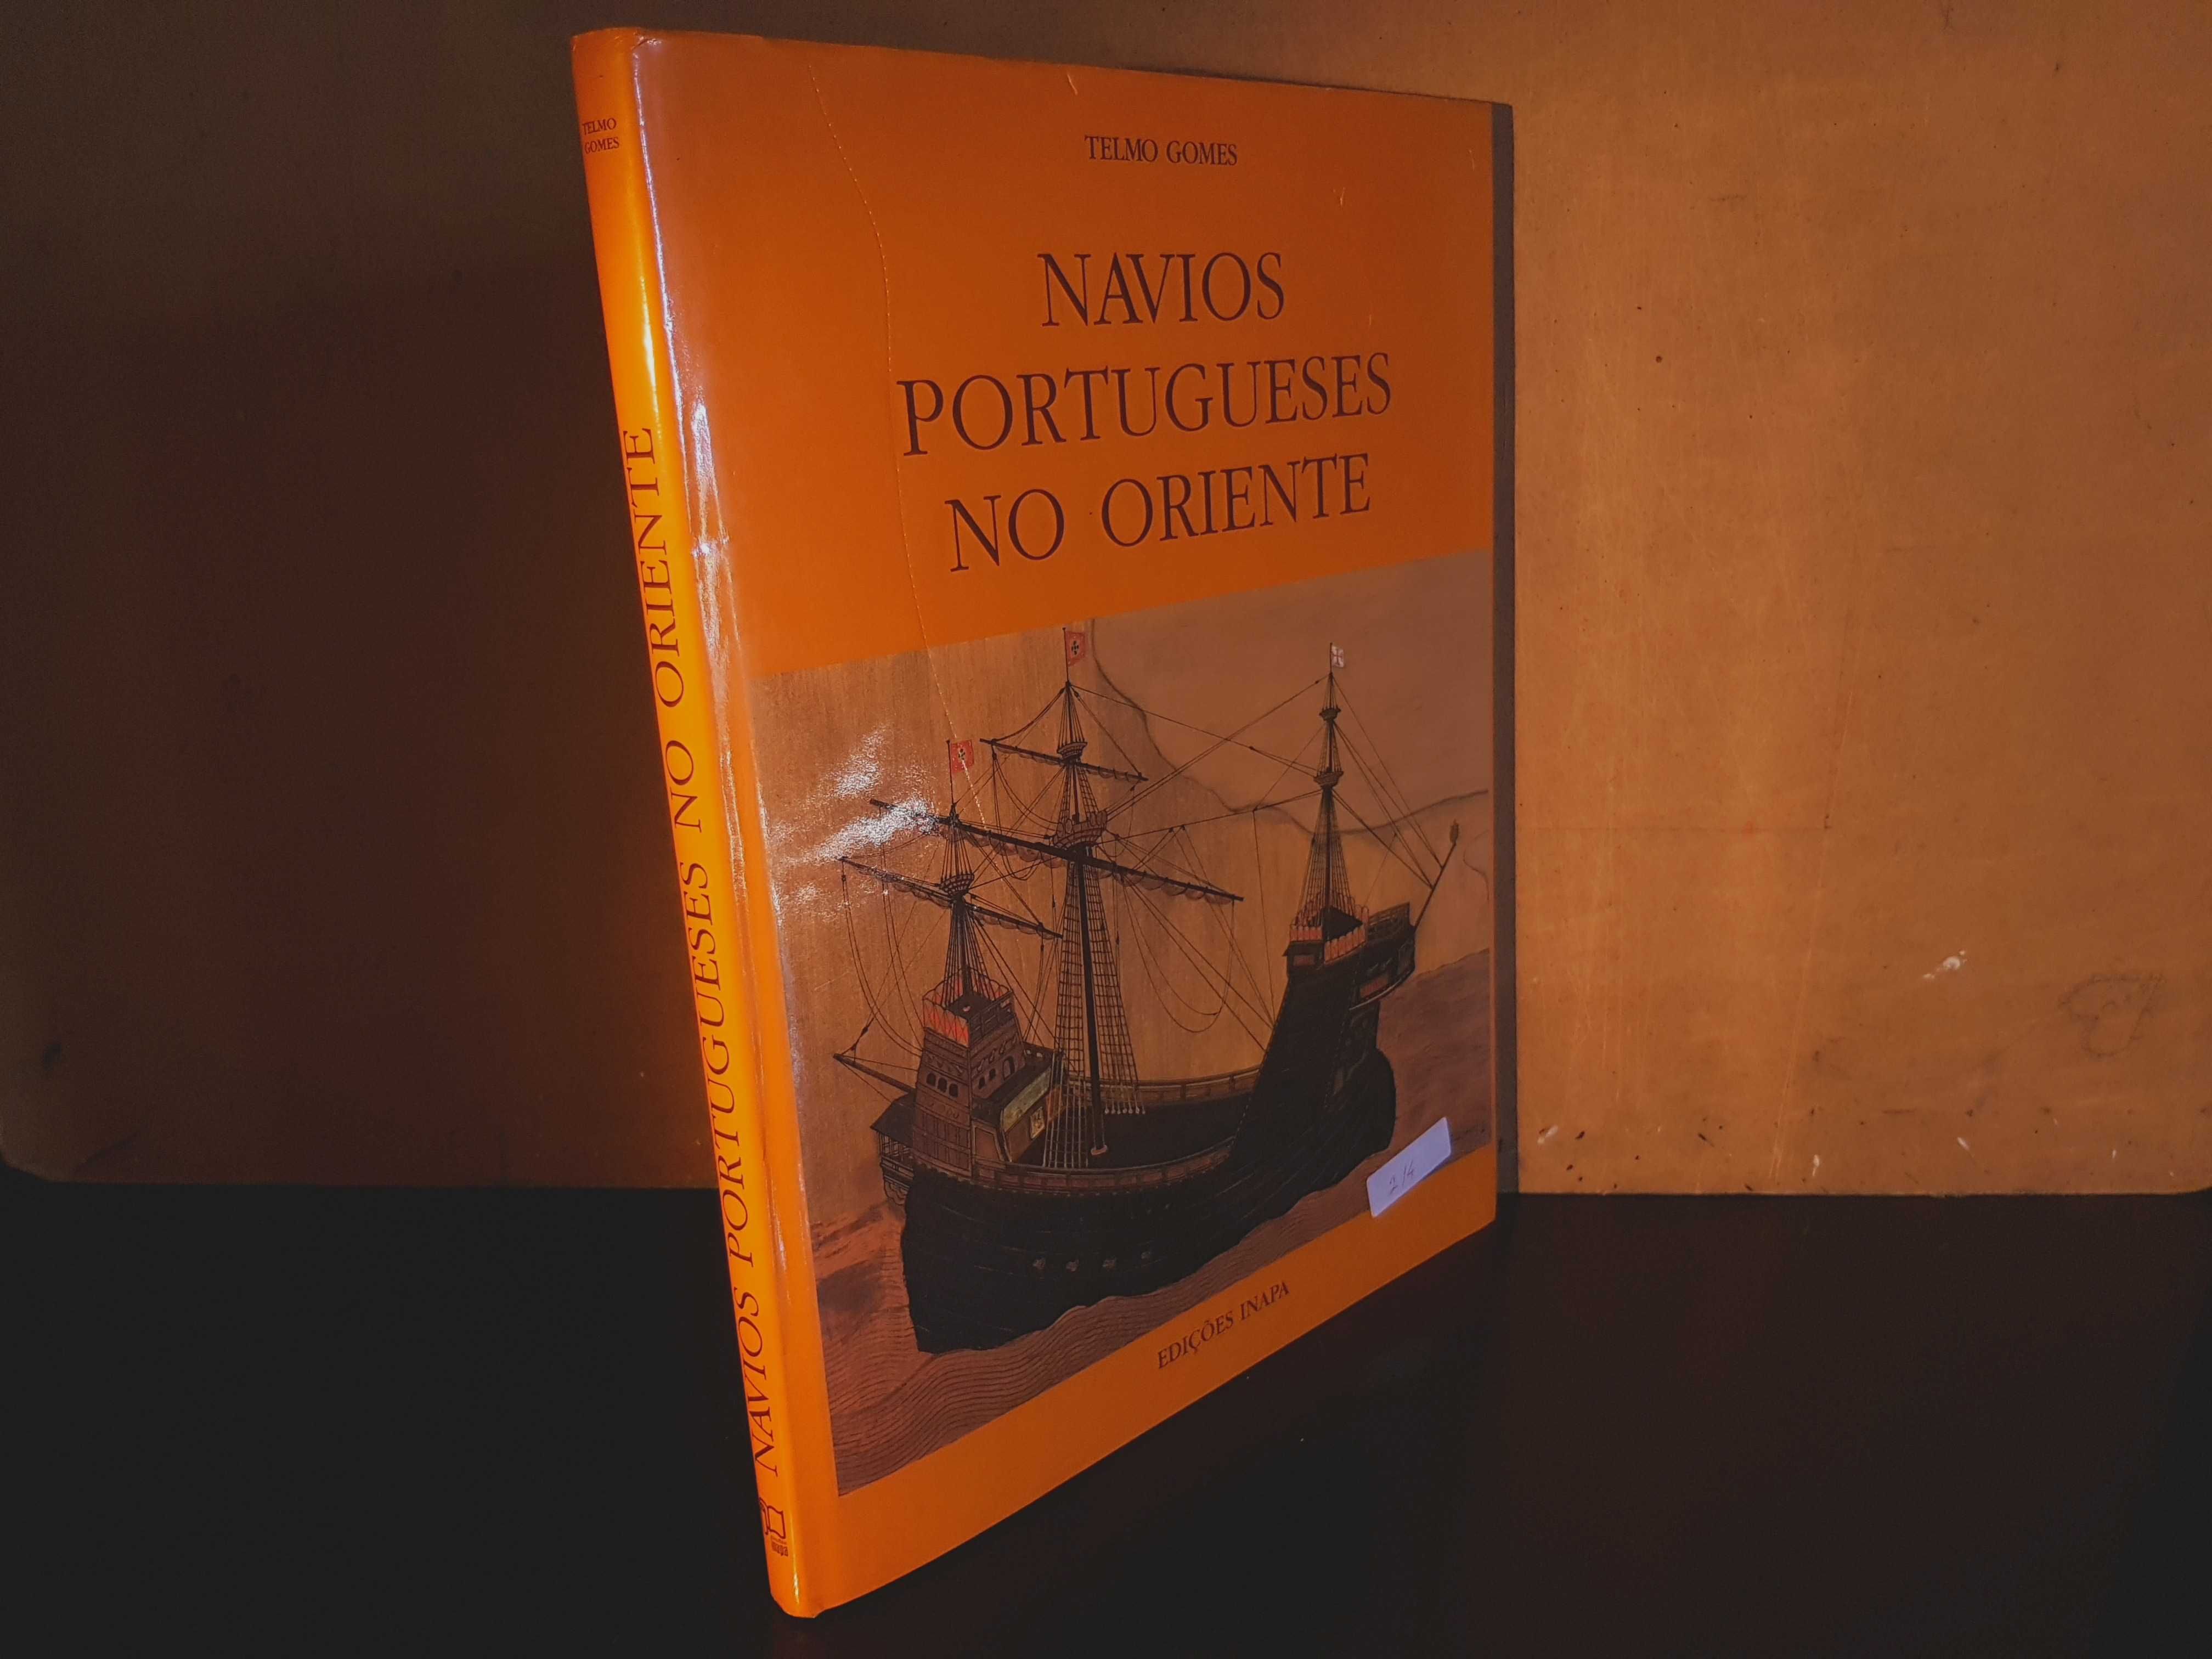 Navio Portugueses No Oriente - Telmo Gomes